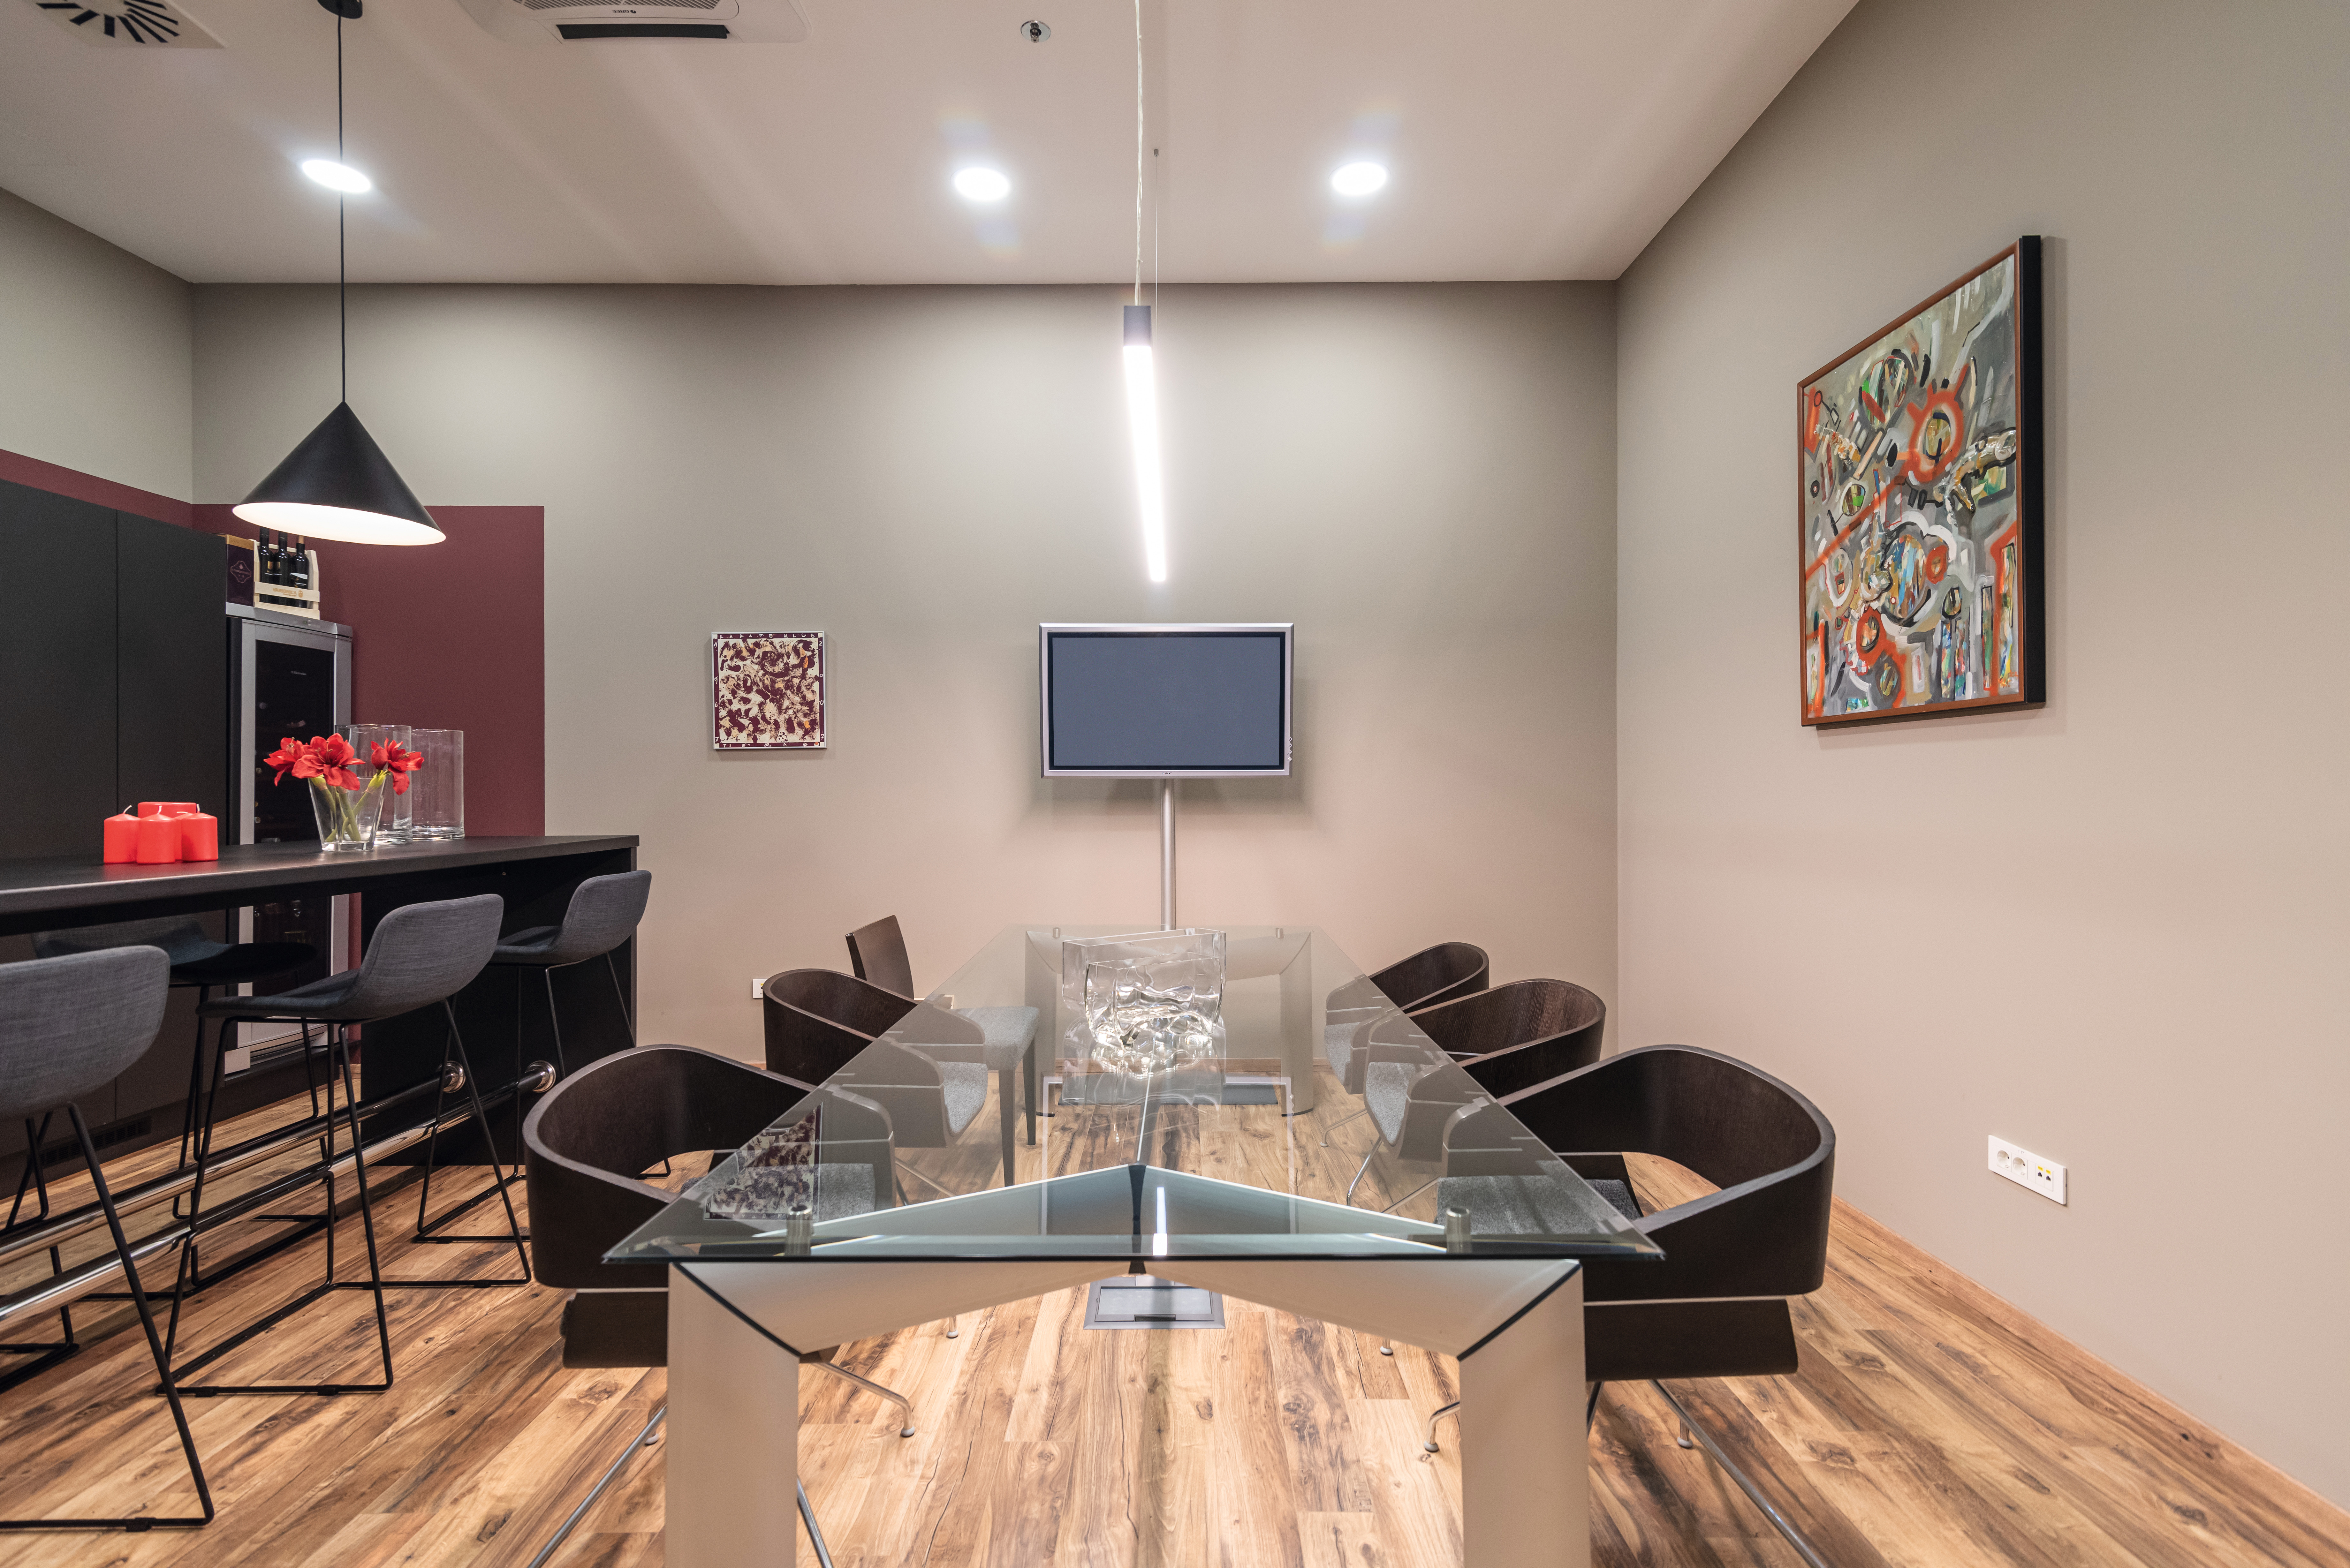 Design e durata sono interconnessi nei mobili per ufficio. Il pavimento in laminato PRO EPL043 è la scelta ideale per zone sottoposte a calpestio intenso.